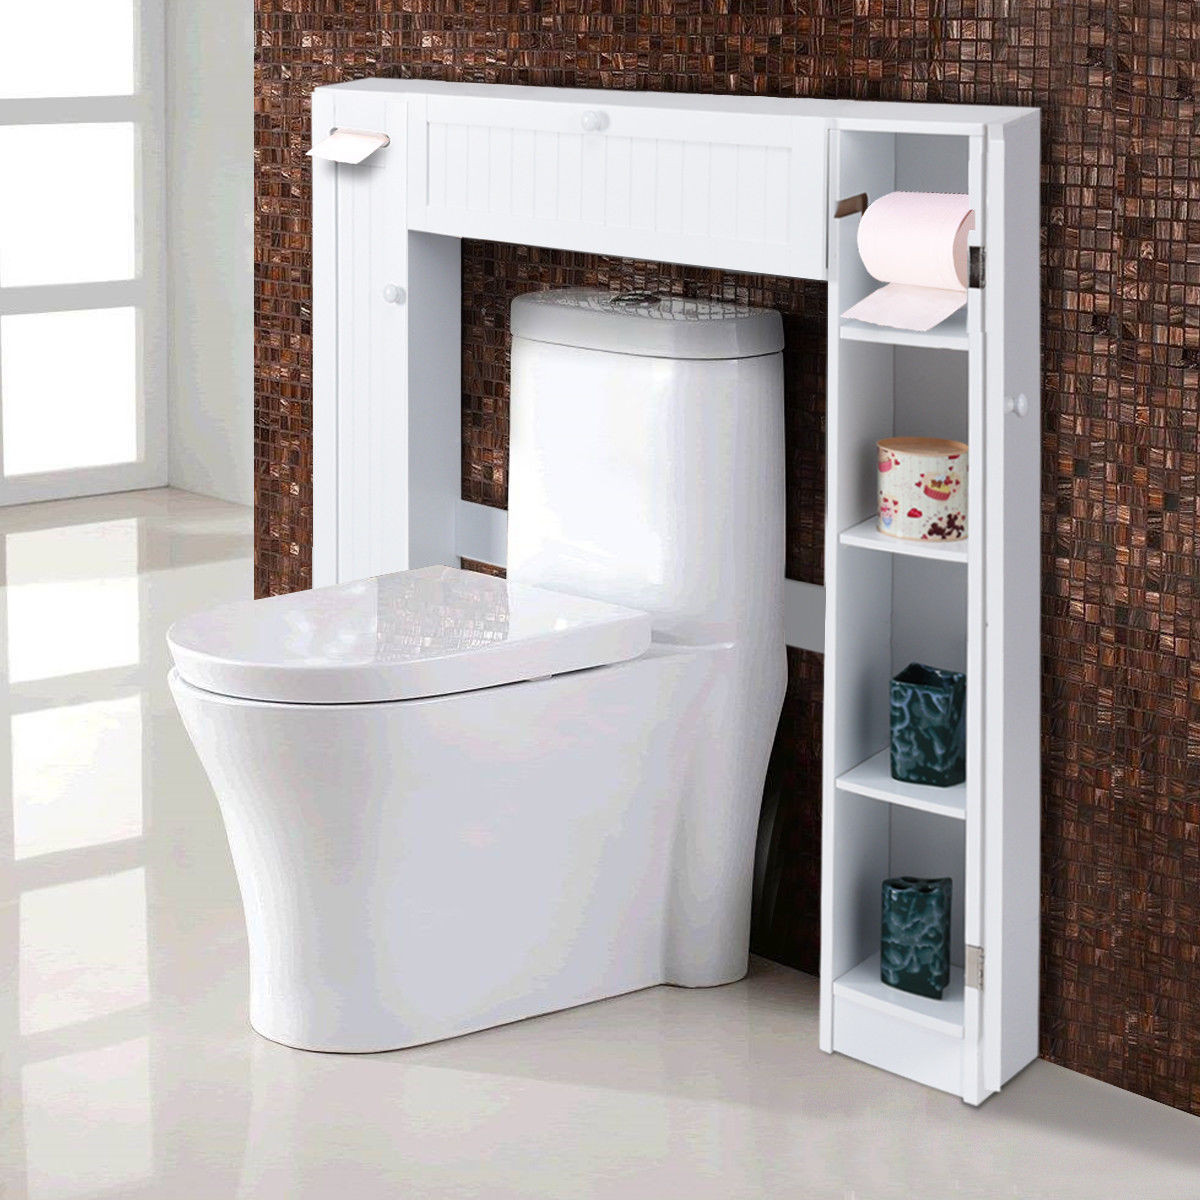 Storage Cabinets For Bathroom
 Costway Wooden Over The Toilet Storage Cabinet Drop Door